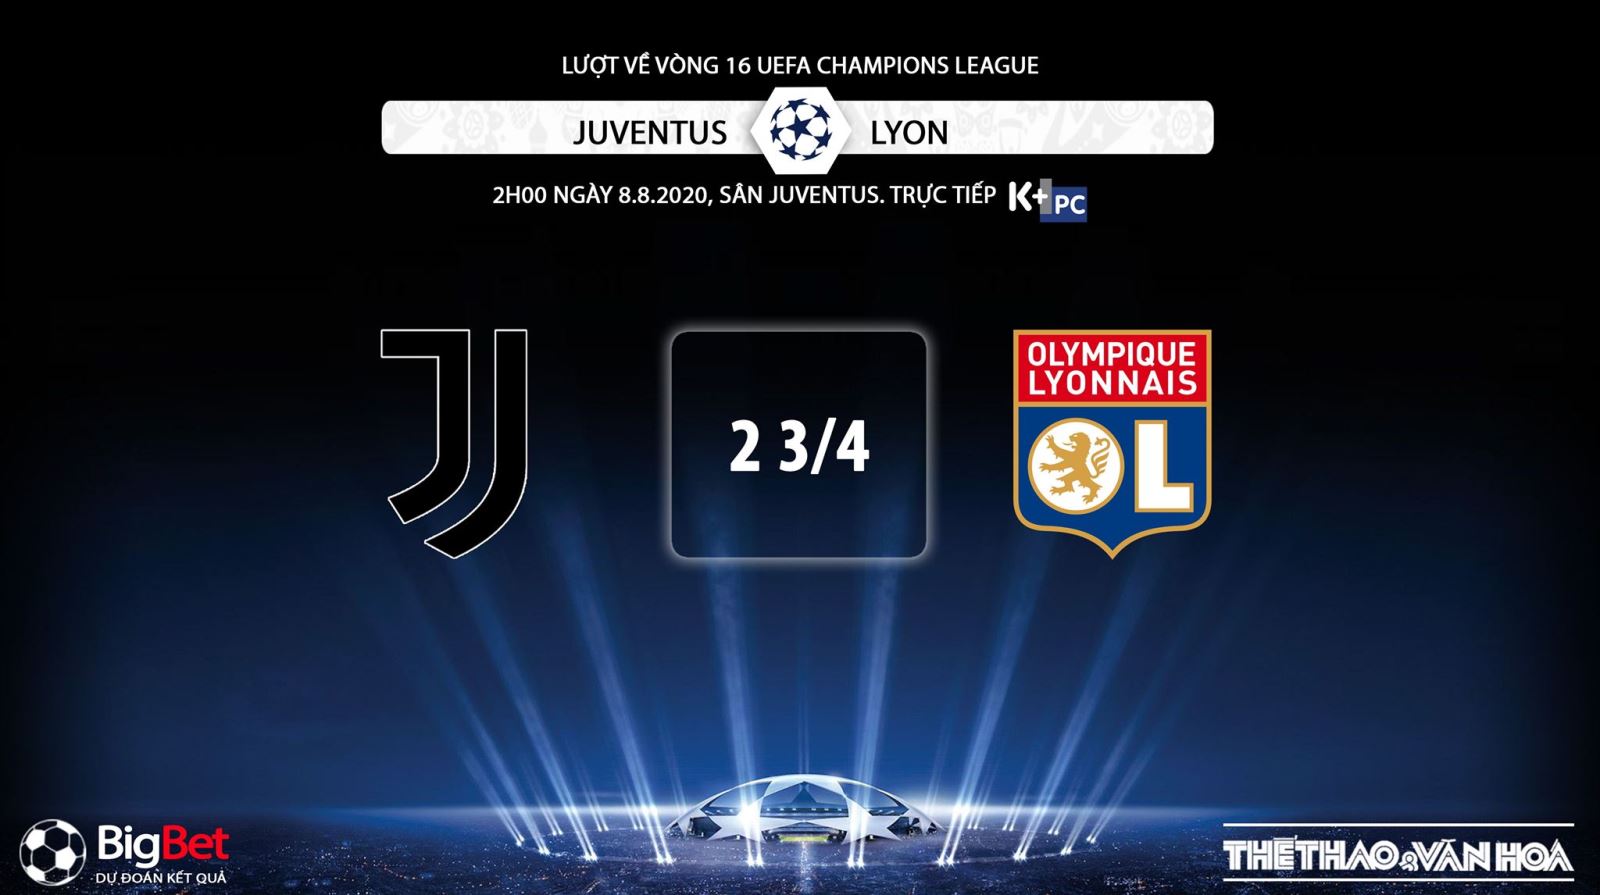 Juventus vs Lyon, Juve, Lyon, trực tiếp bóng đá, trực tiếp, trực tiếp Juventus vs Lyon, nhận định bóng đá bóng đá, nhận định bóng đá Juventus vs Lyon, kèo bóng đá